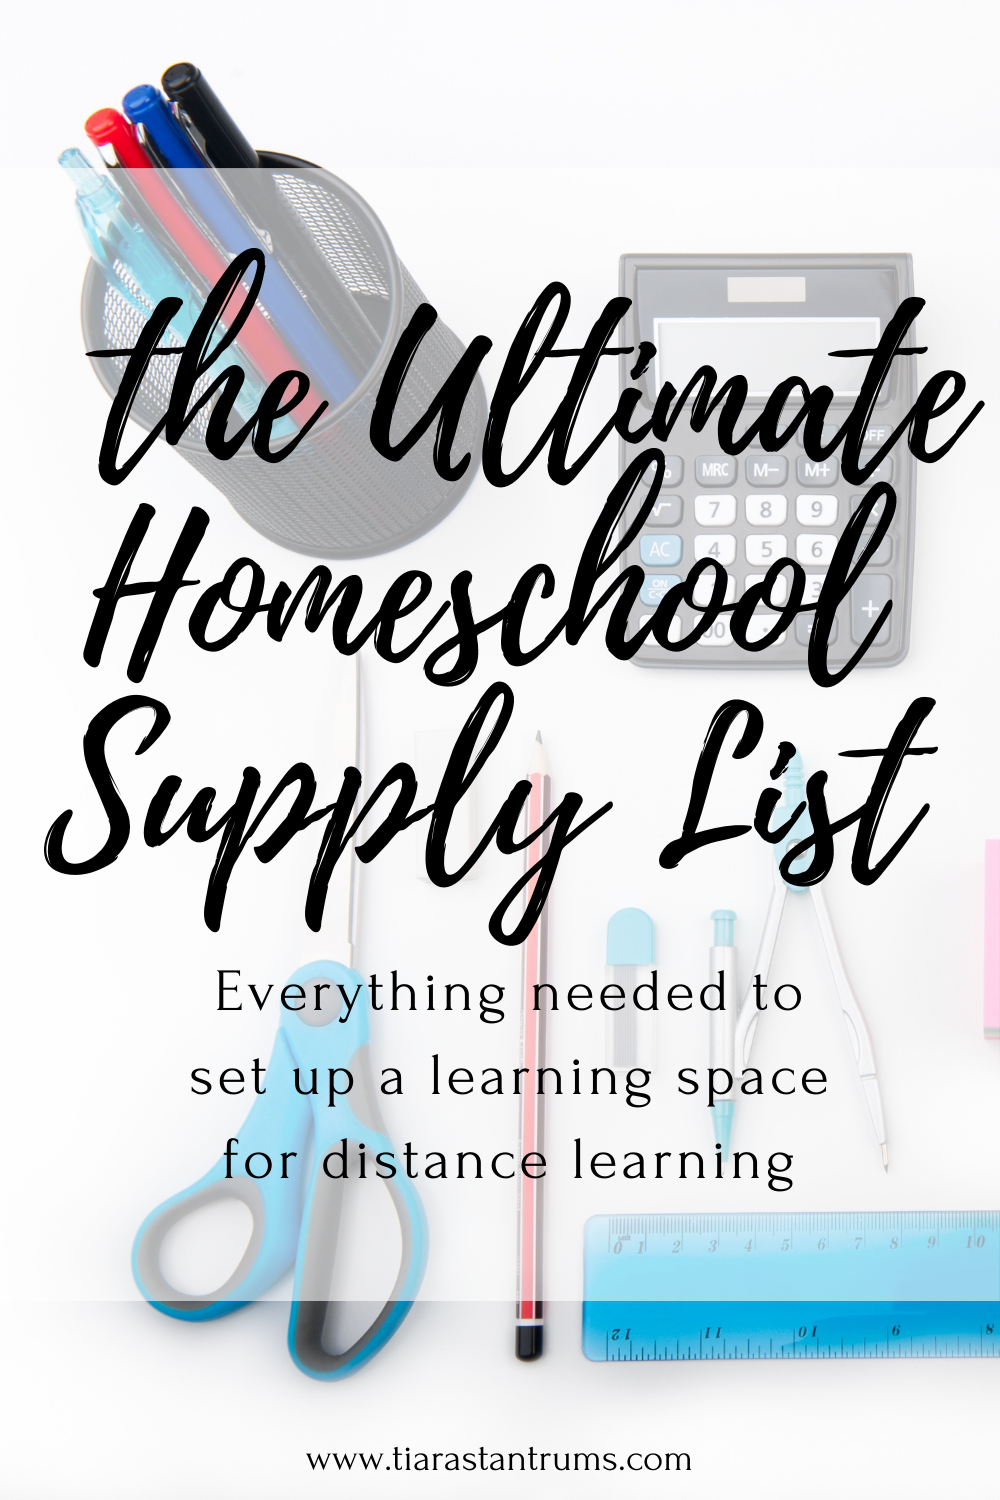 The Best Art Supplies List for Homeschooling